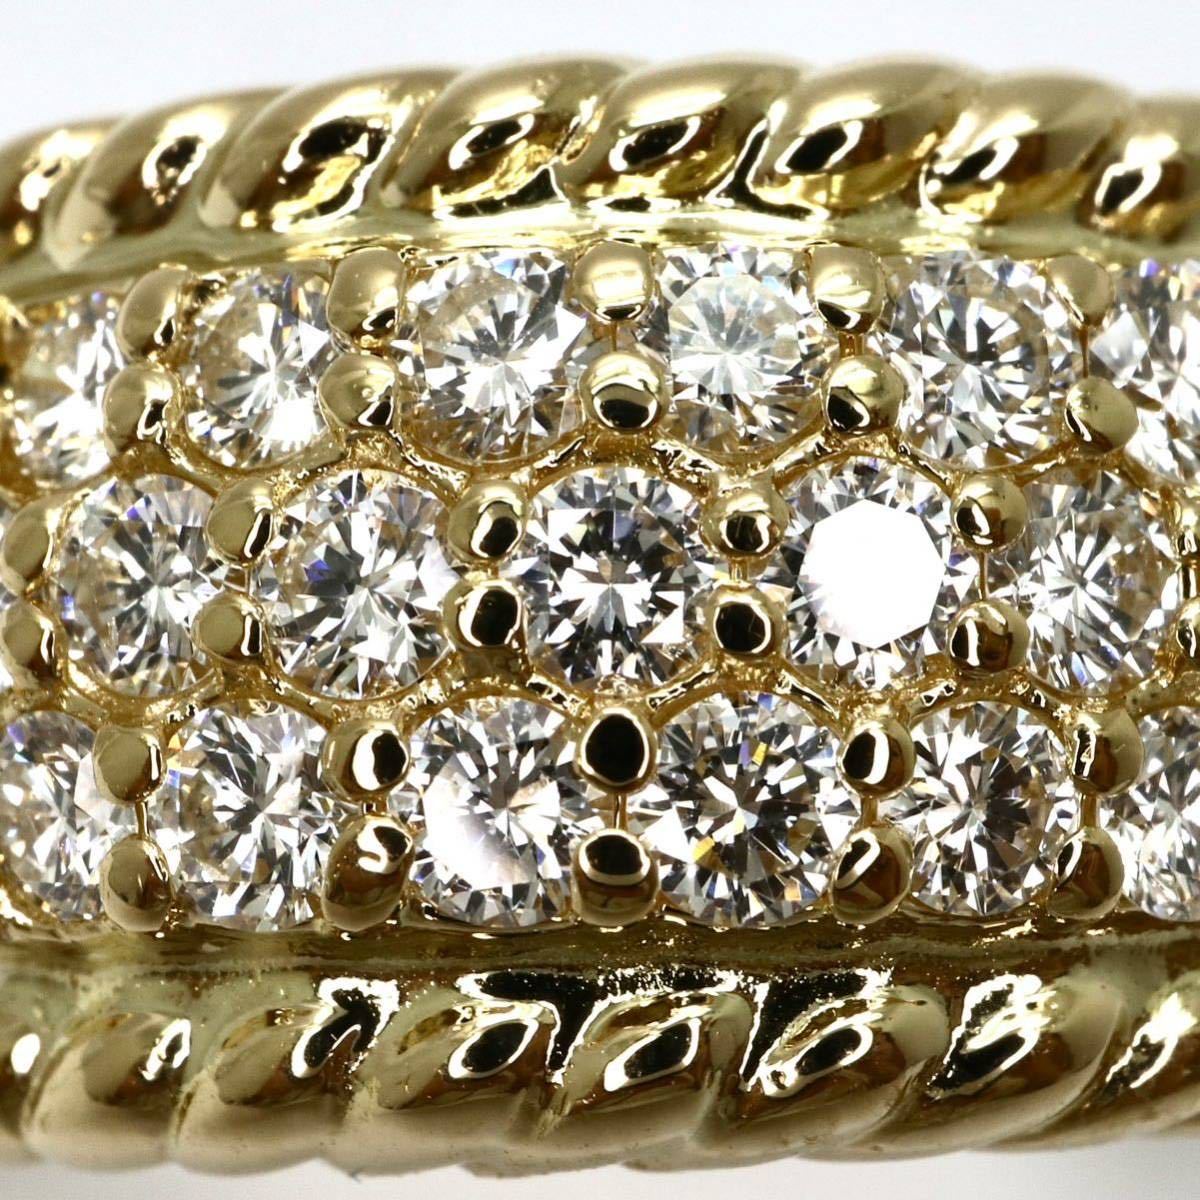 豪華!!新品仕上げ済み!!◆K18 天然ダイヤモンドパヴェリング◆M 8.3g 15号 1ct diamond ring 指輪 jewelry pave EG6_画像3